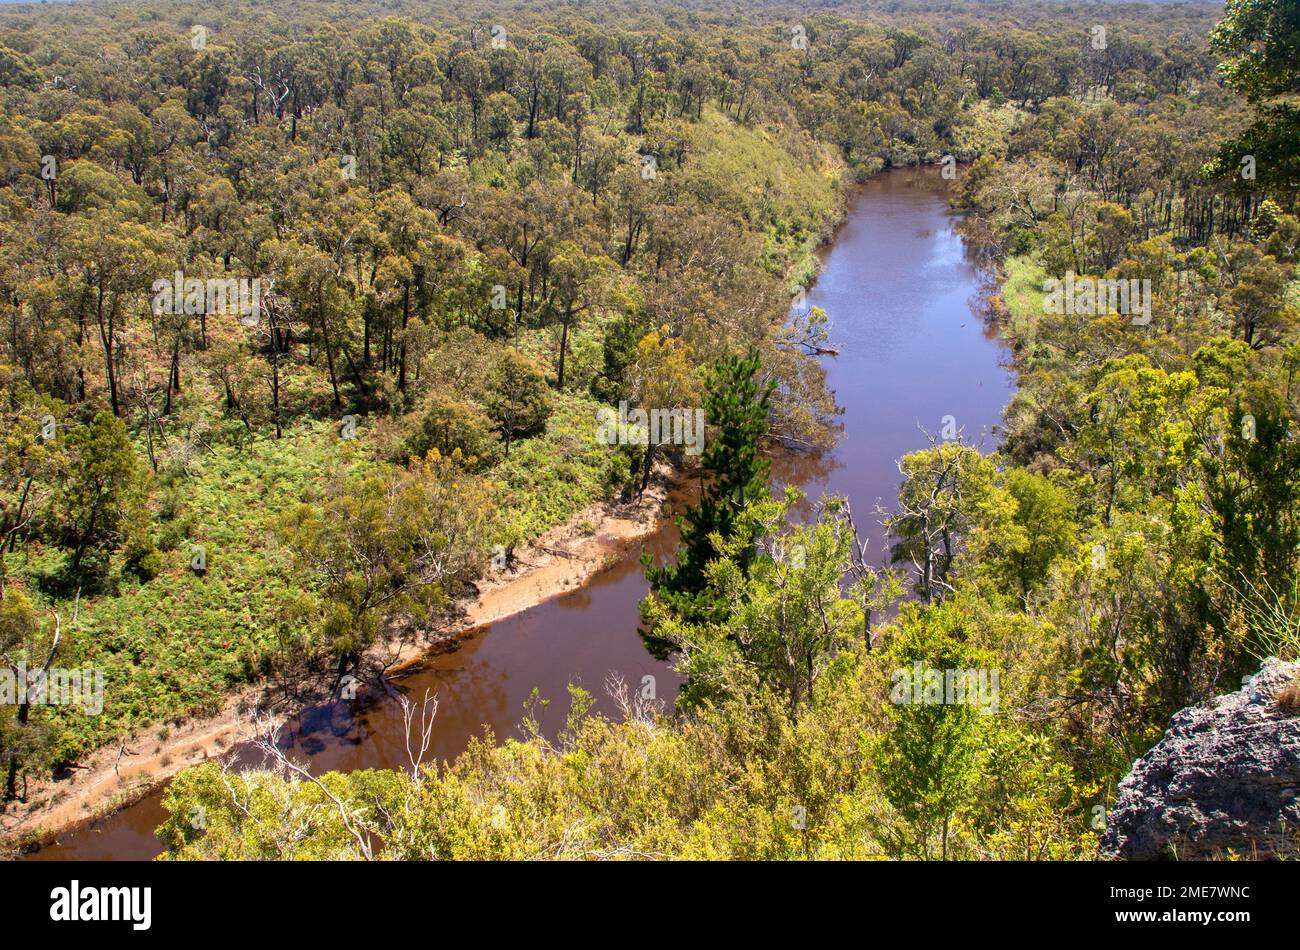 The Glenelg River, running through Lower Glenelg National Park Stock Photo